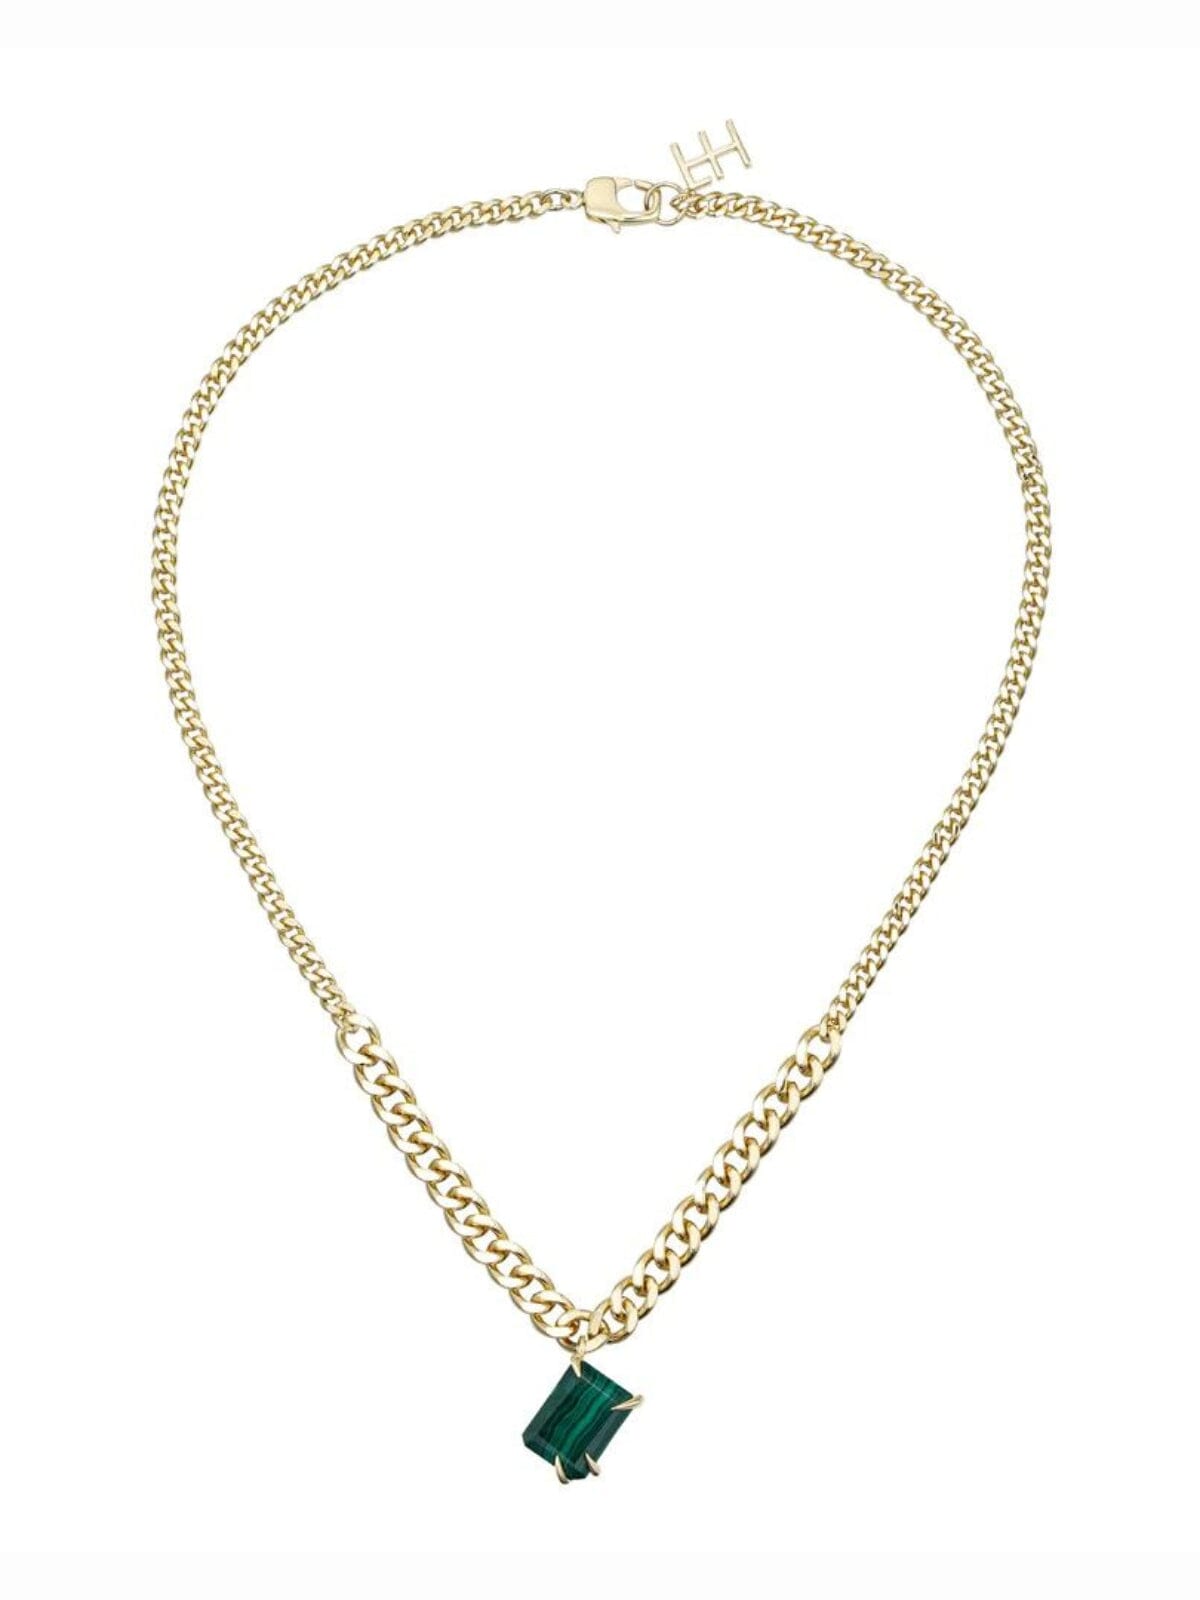 Fierce Pendant Necklace: Brass + 18K Gold Plating + Malachite